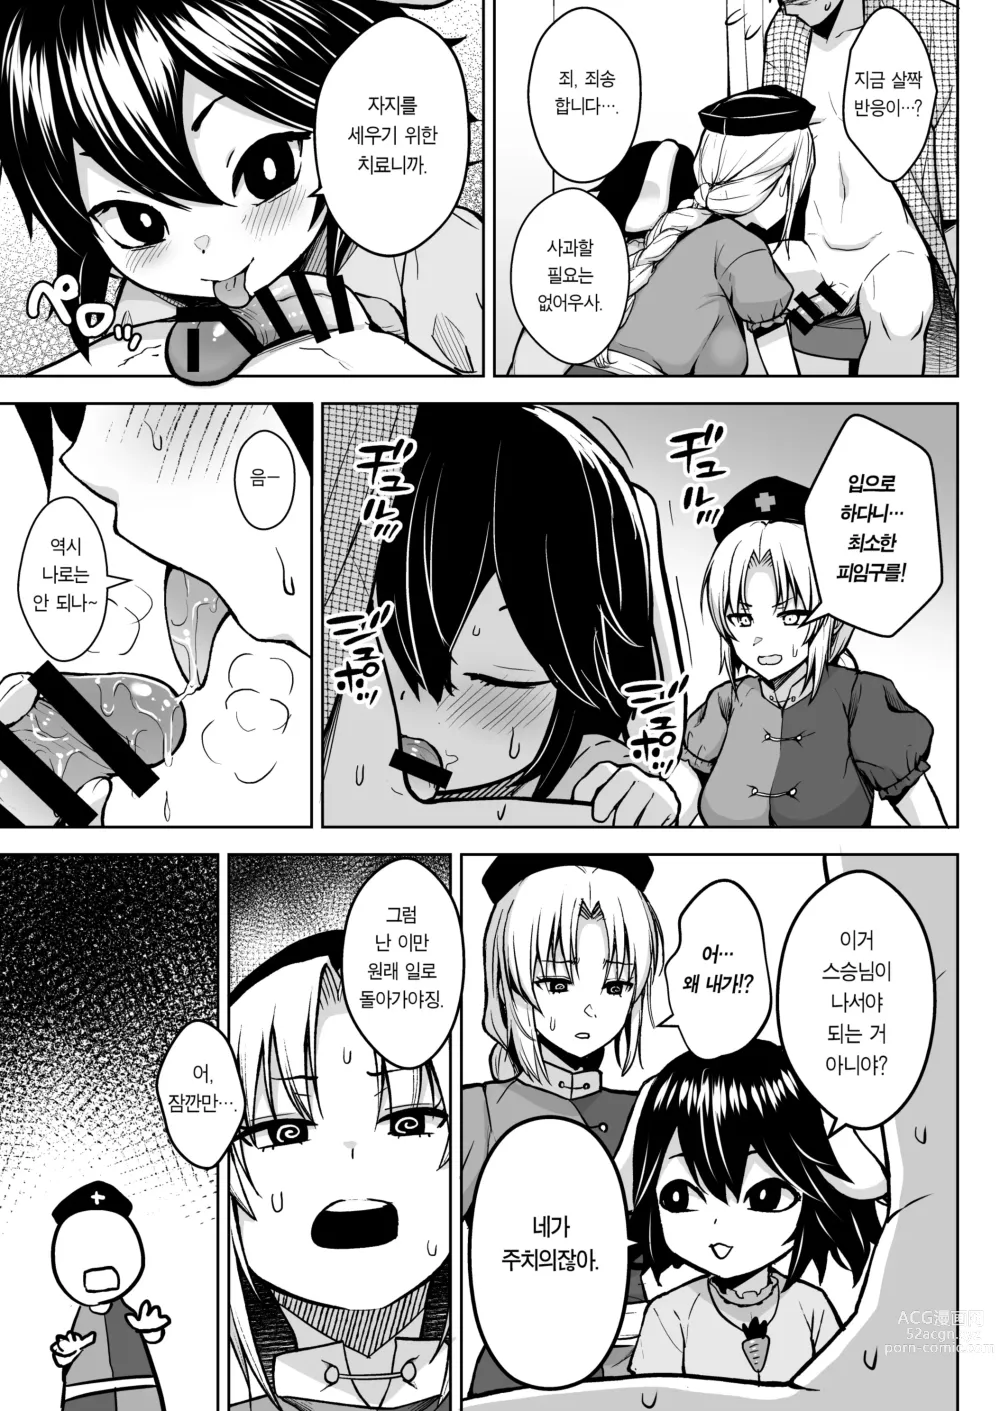 Page 7 of doujinshi 에이린이 가슴을 존나 괴롭혀져서 P컵이 되기까지의 이야기